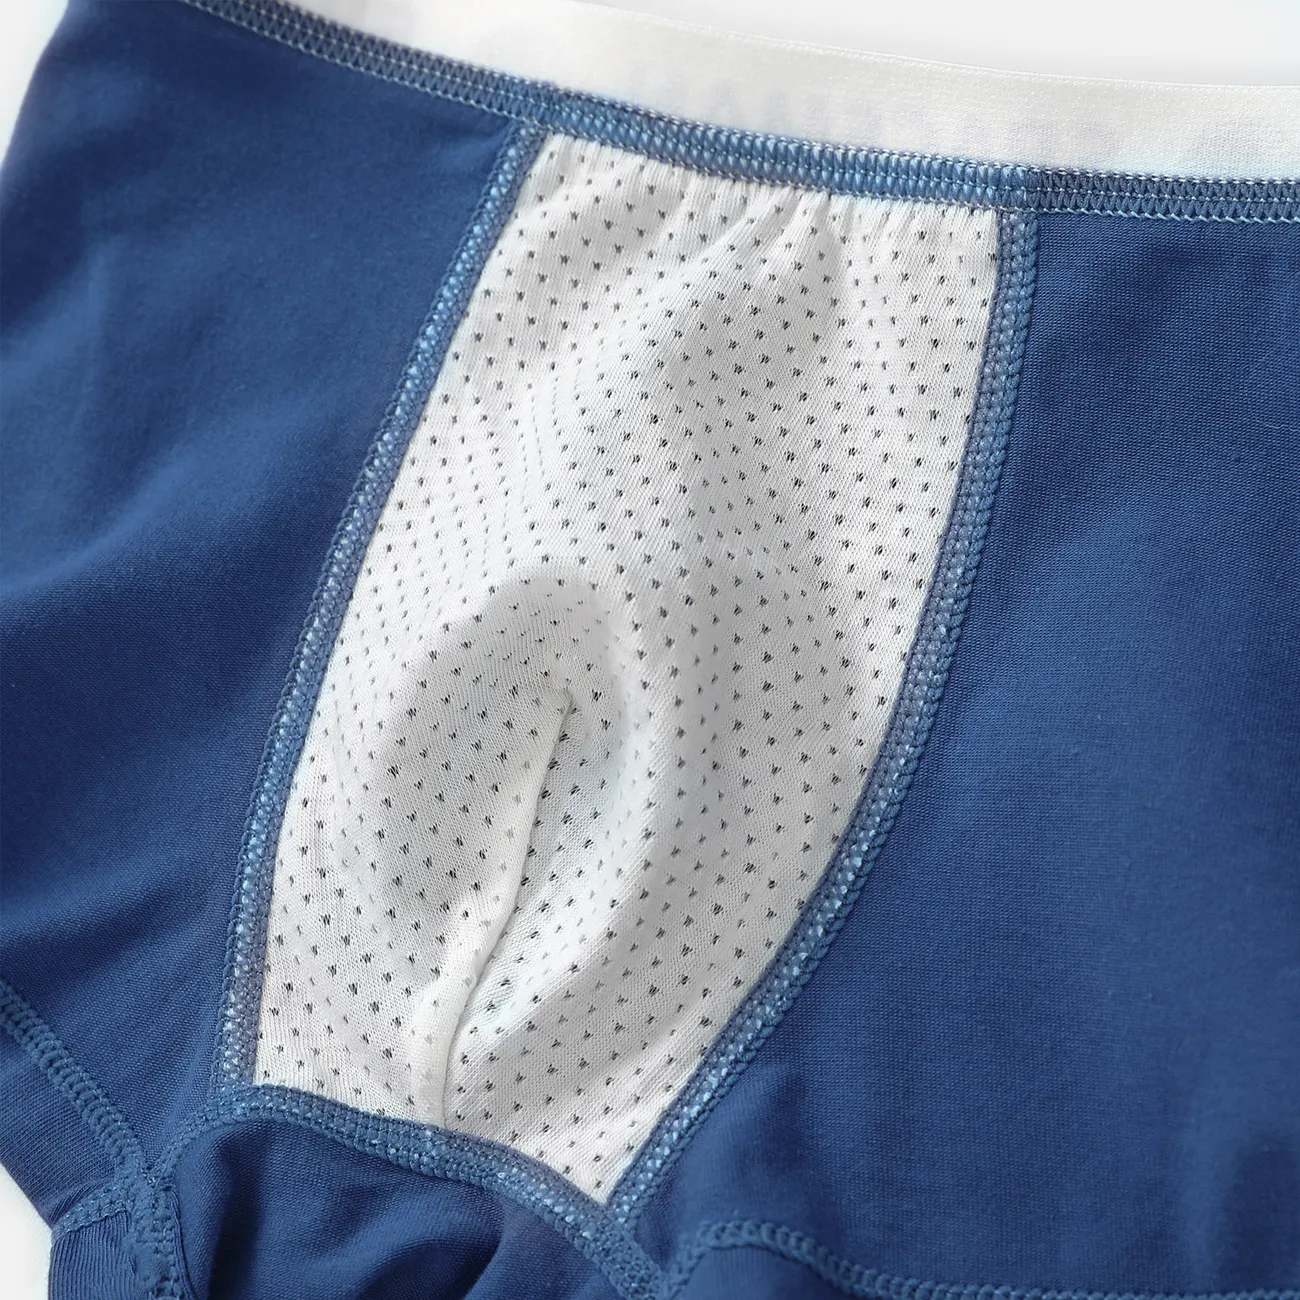 4 قطع طفل صغير / طفل صبي طفولي شخصية القطن الملابس الداخلية مجموعة أزرق غامق big image 1